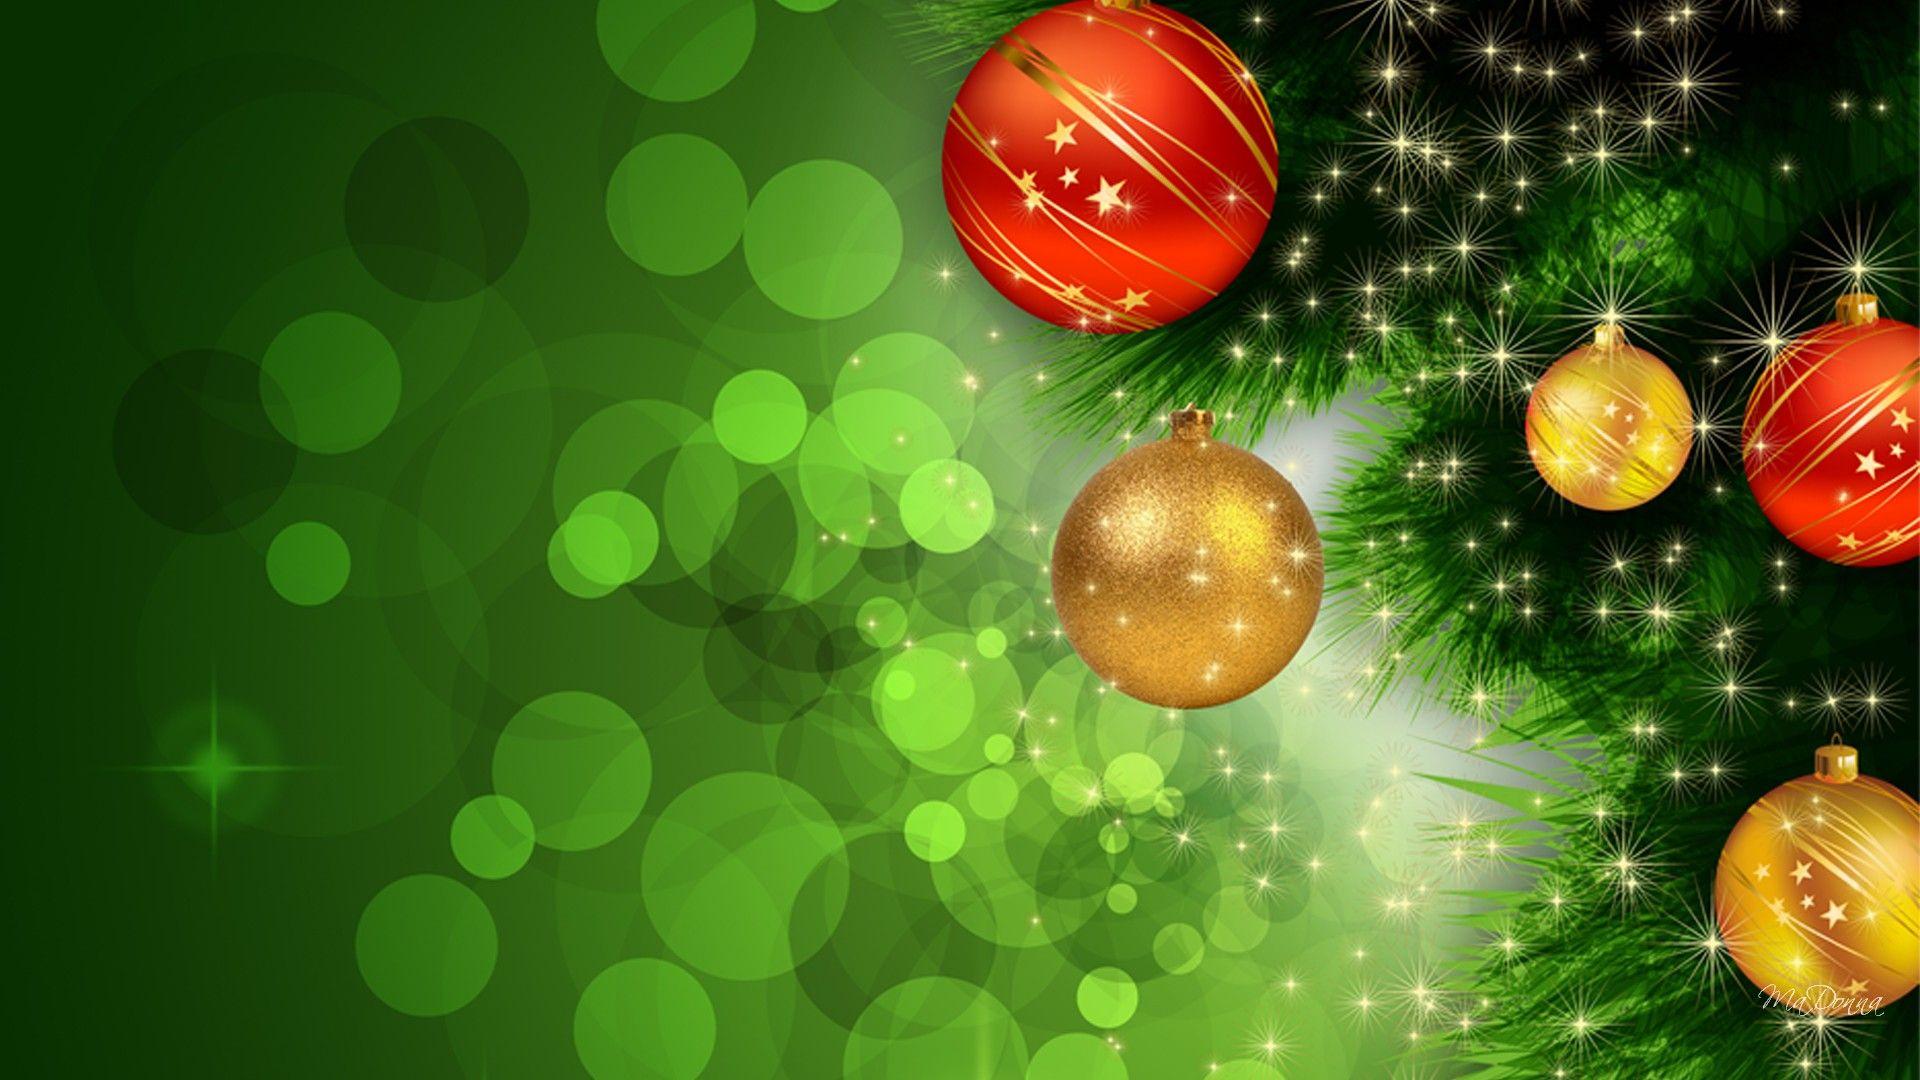 Hình nền Giáng sinh màu xanh lá cây là lựa chọn hoàn hảo để trang trí cho màn hình điện thoại hay máy tính của bạn trong dịp lễ hội đặc biệt này. Hãy xem những hình ảnh liên quan để tìm kiếm lựa chọn ưa thích của bạn!